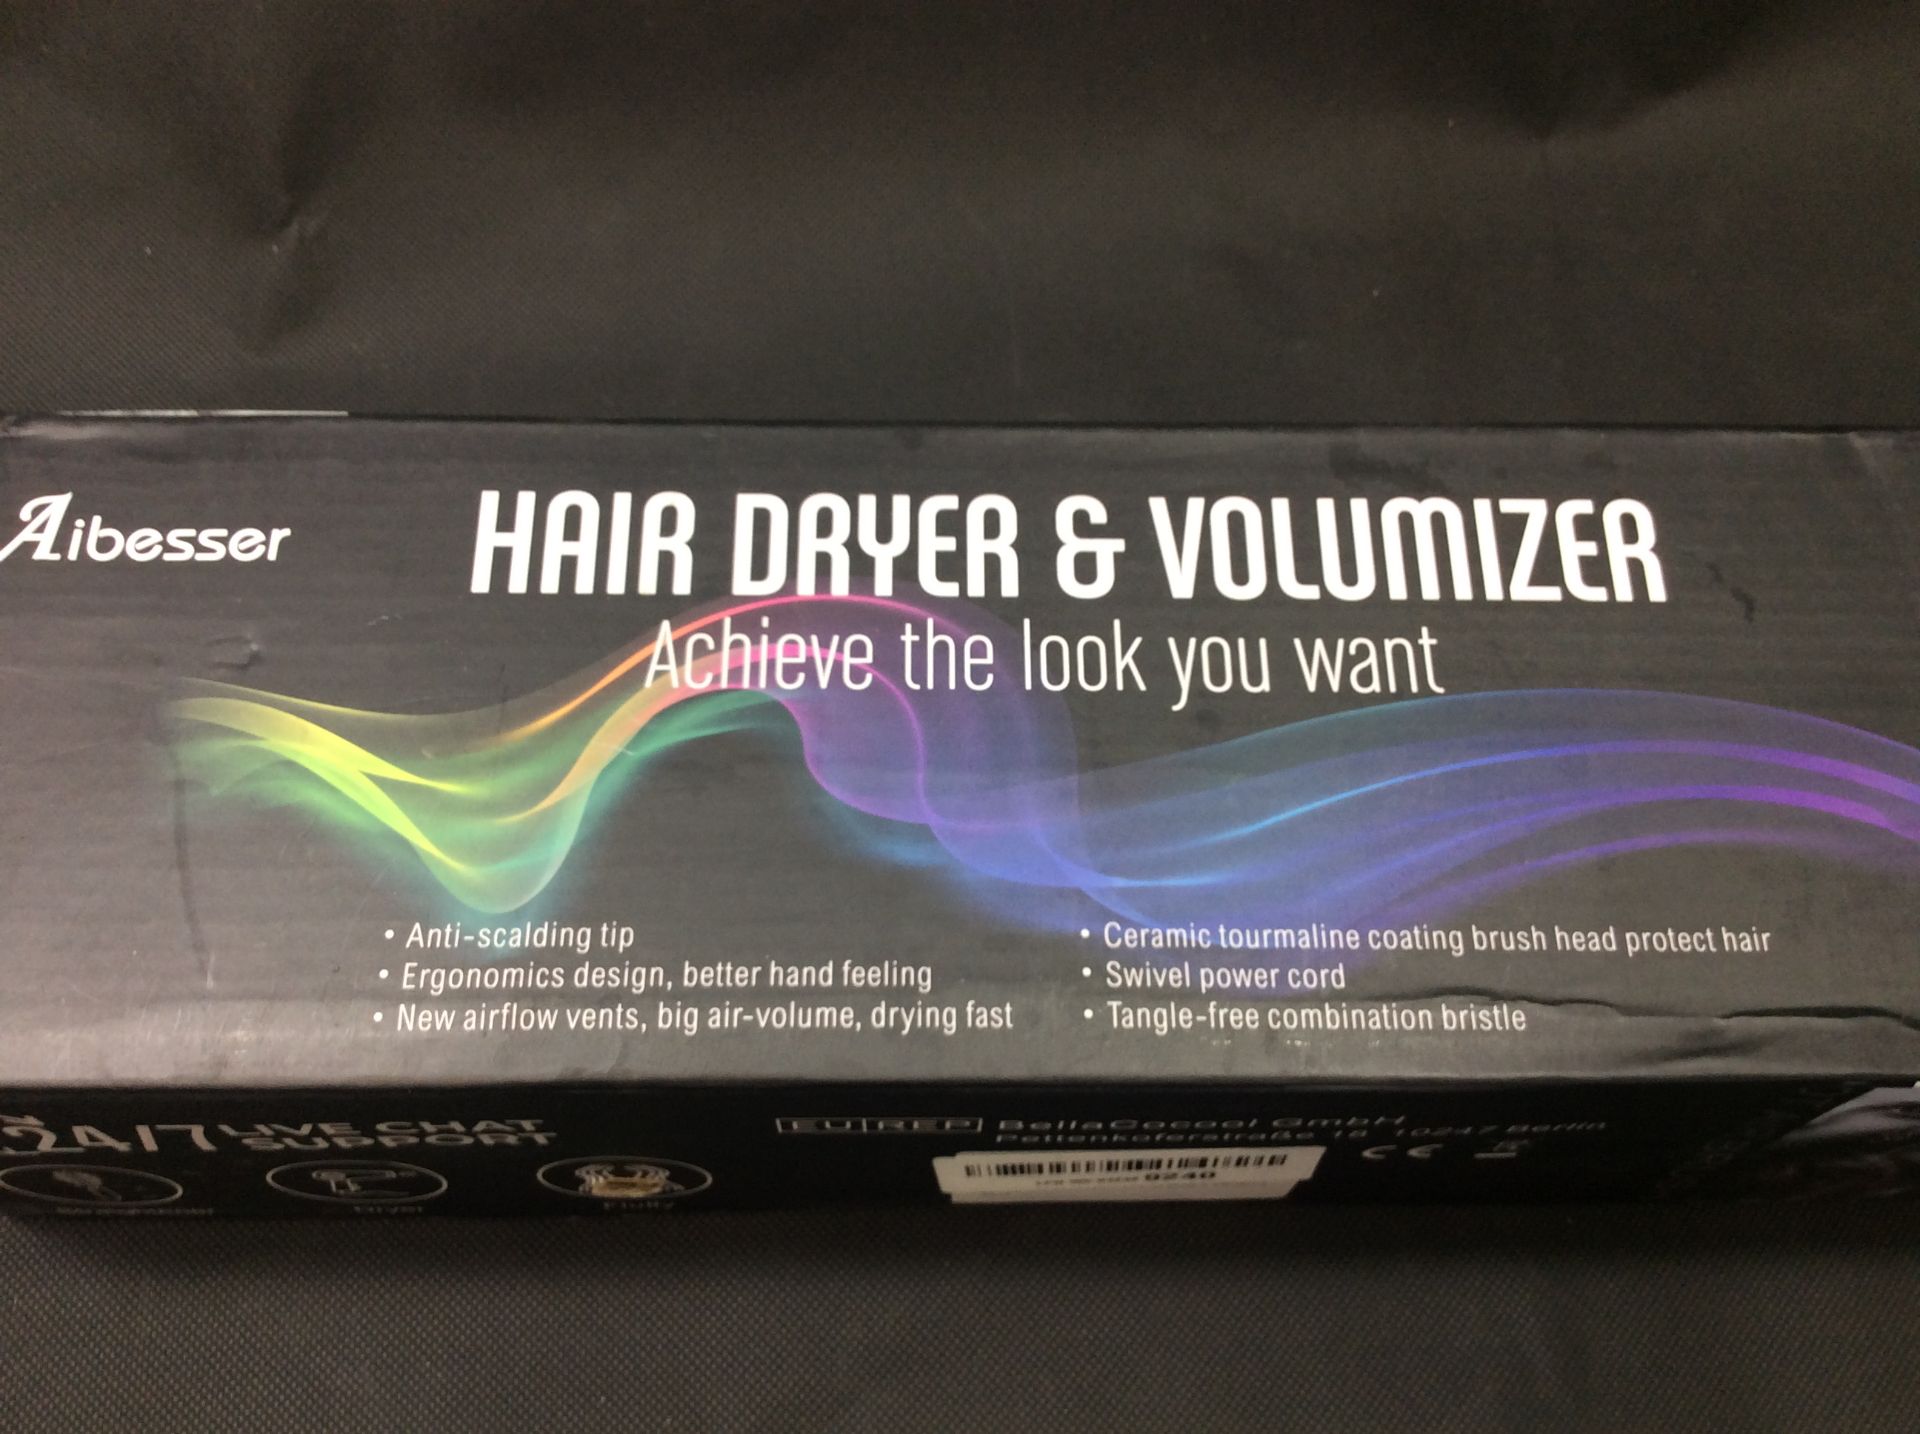 Aibesser hair dryer & volumizer